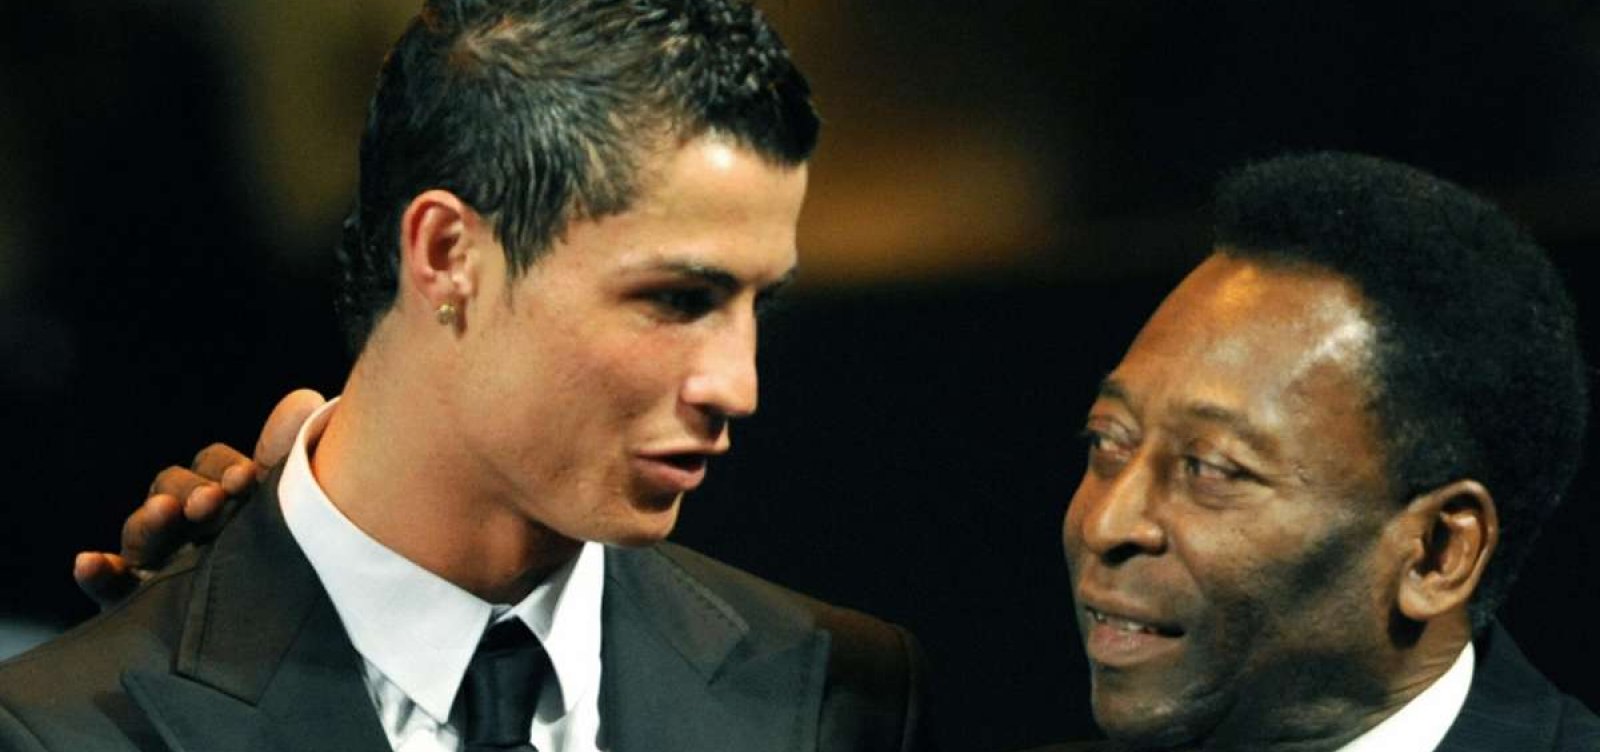 Cristiano Ronaldo iguala Pelé e se torna o segundo maior goleador da história do futebol